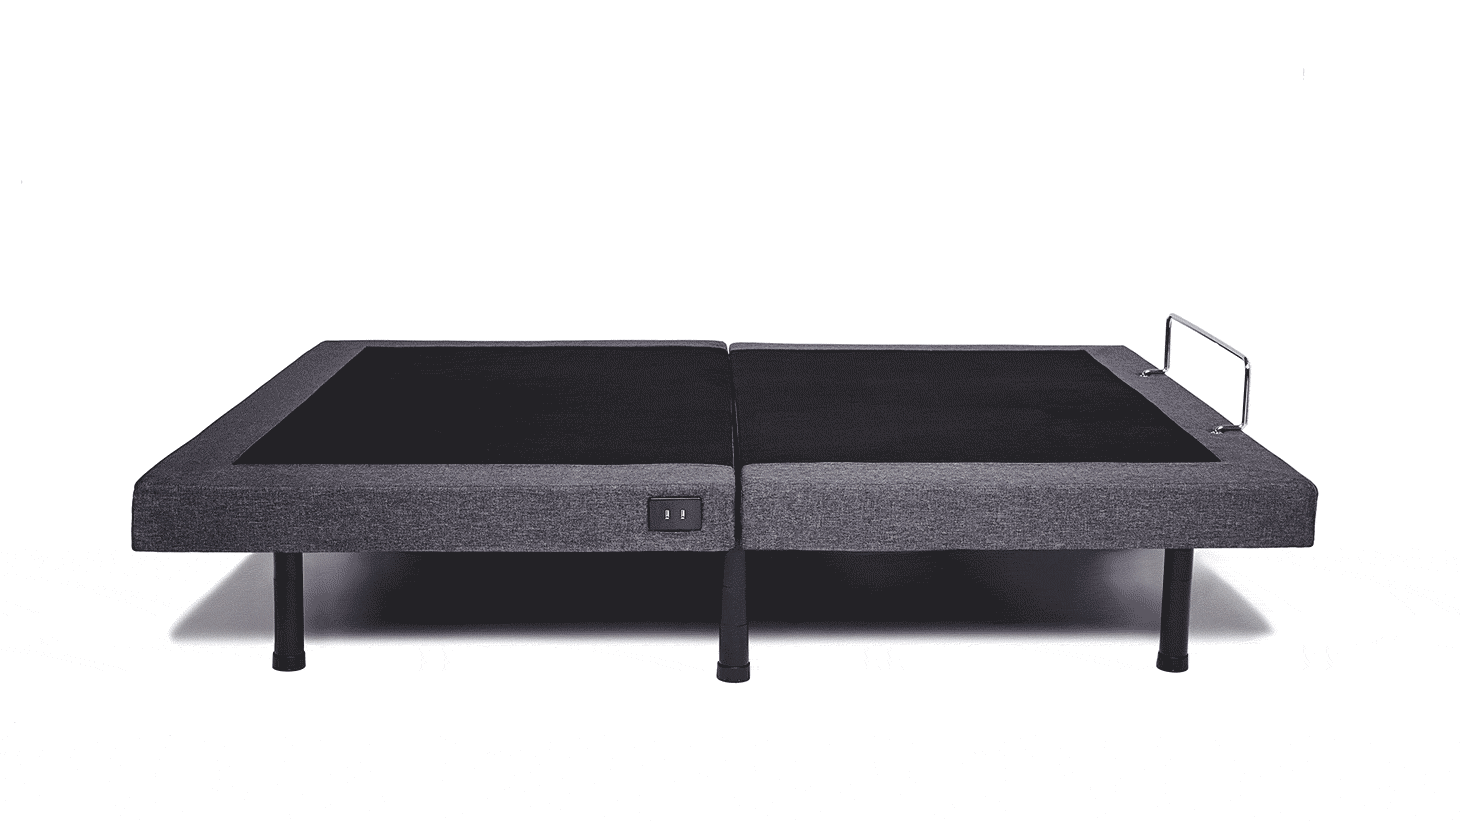 Split King Size Adjustable Bed Frames, How To Install An Adjustable Bed Frame